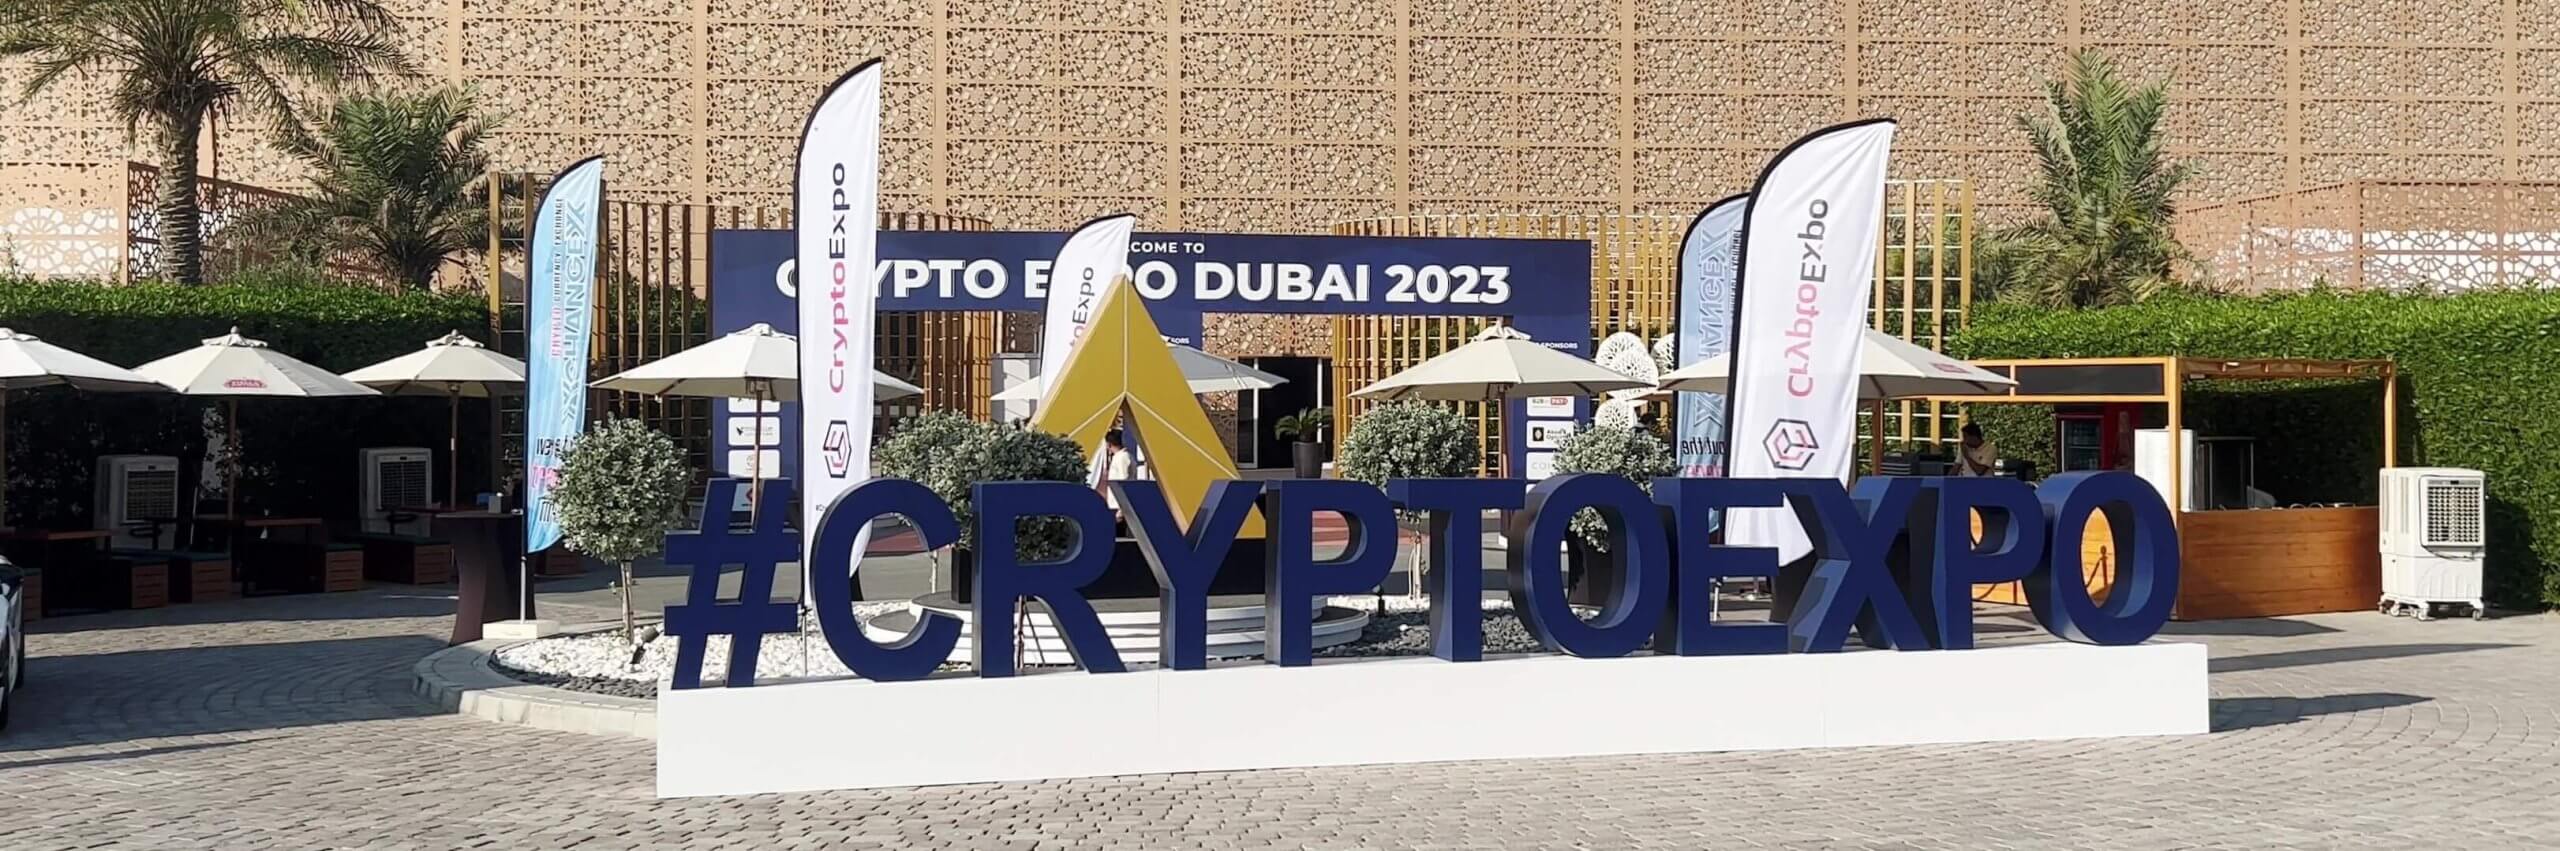 Crypto Expo Dubai 2023